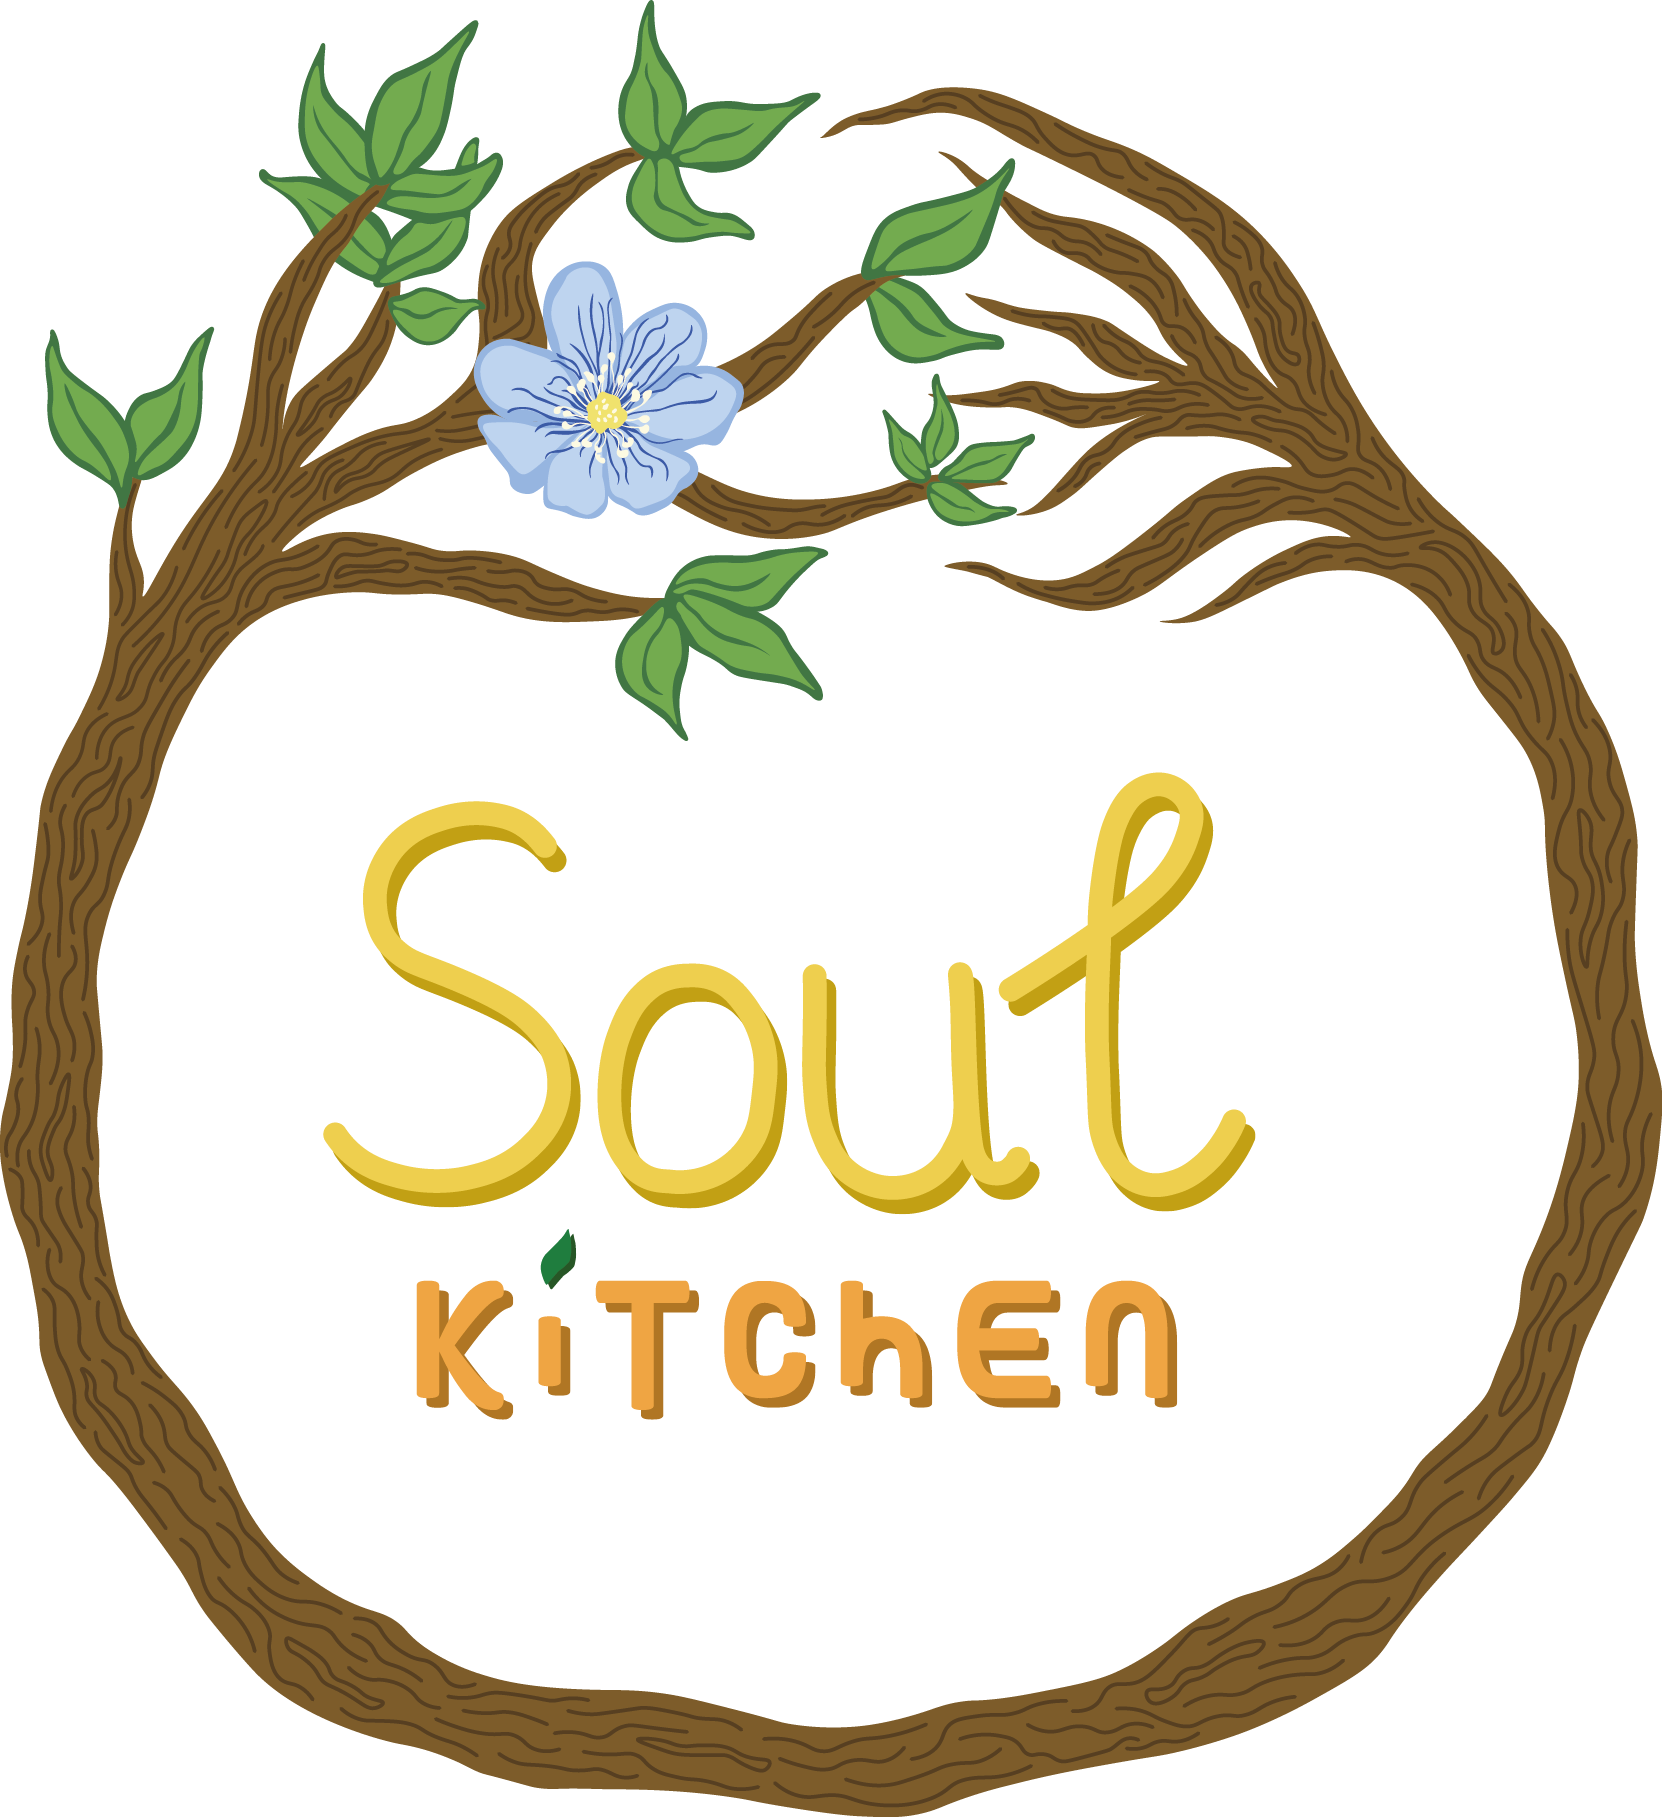 soul kitchen logo